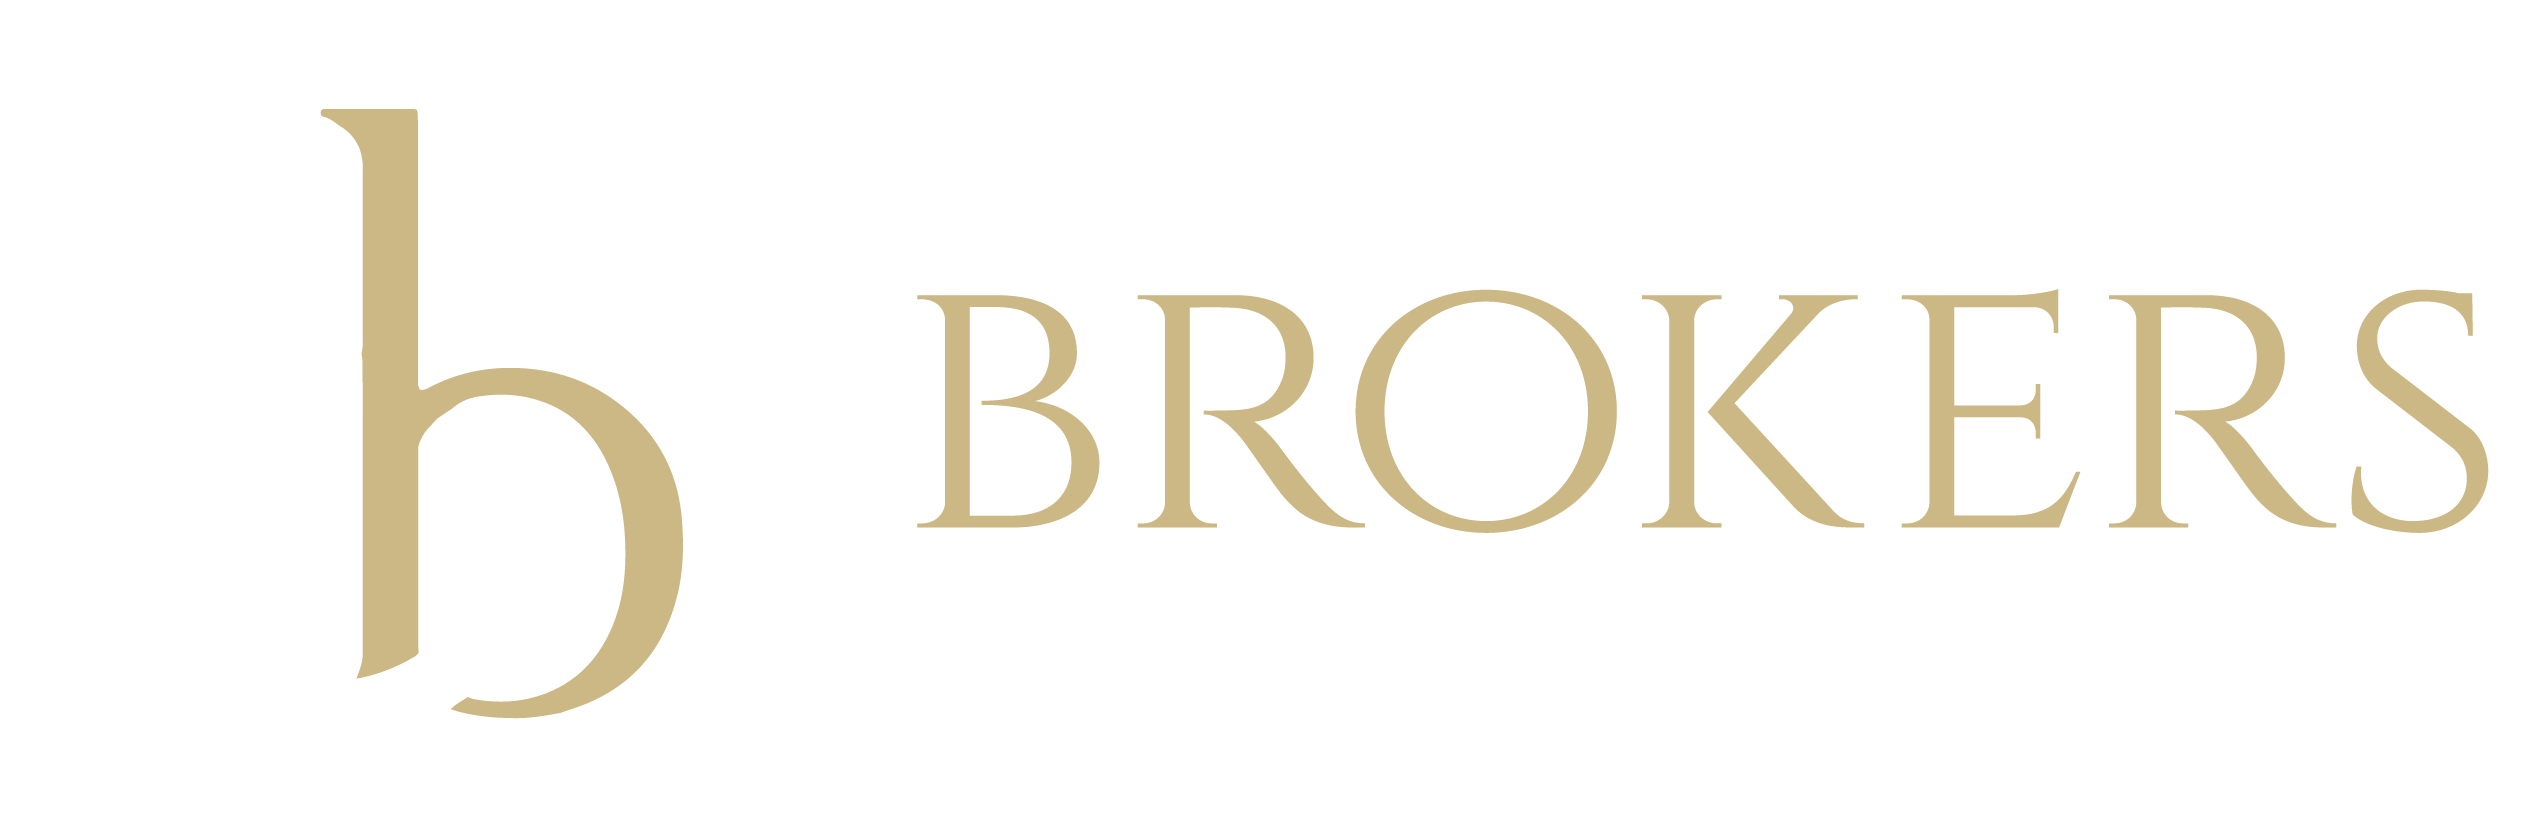 Bozeman Brokers Real Estate